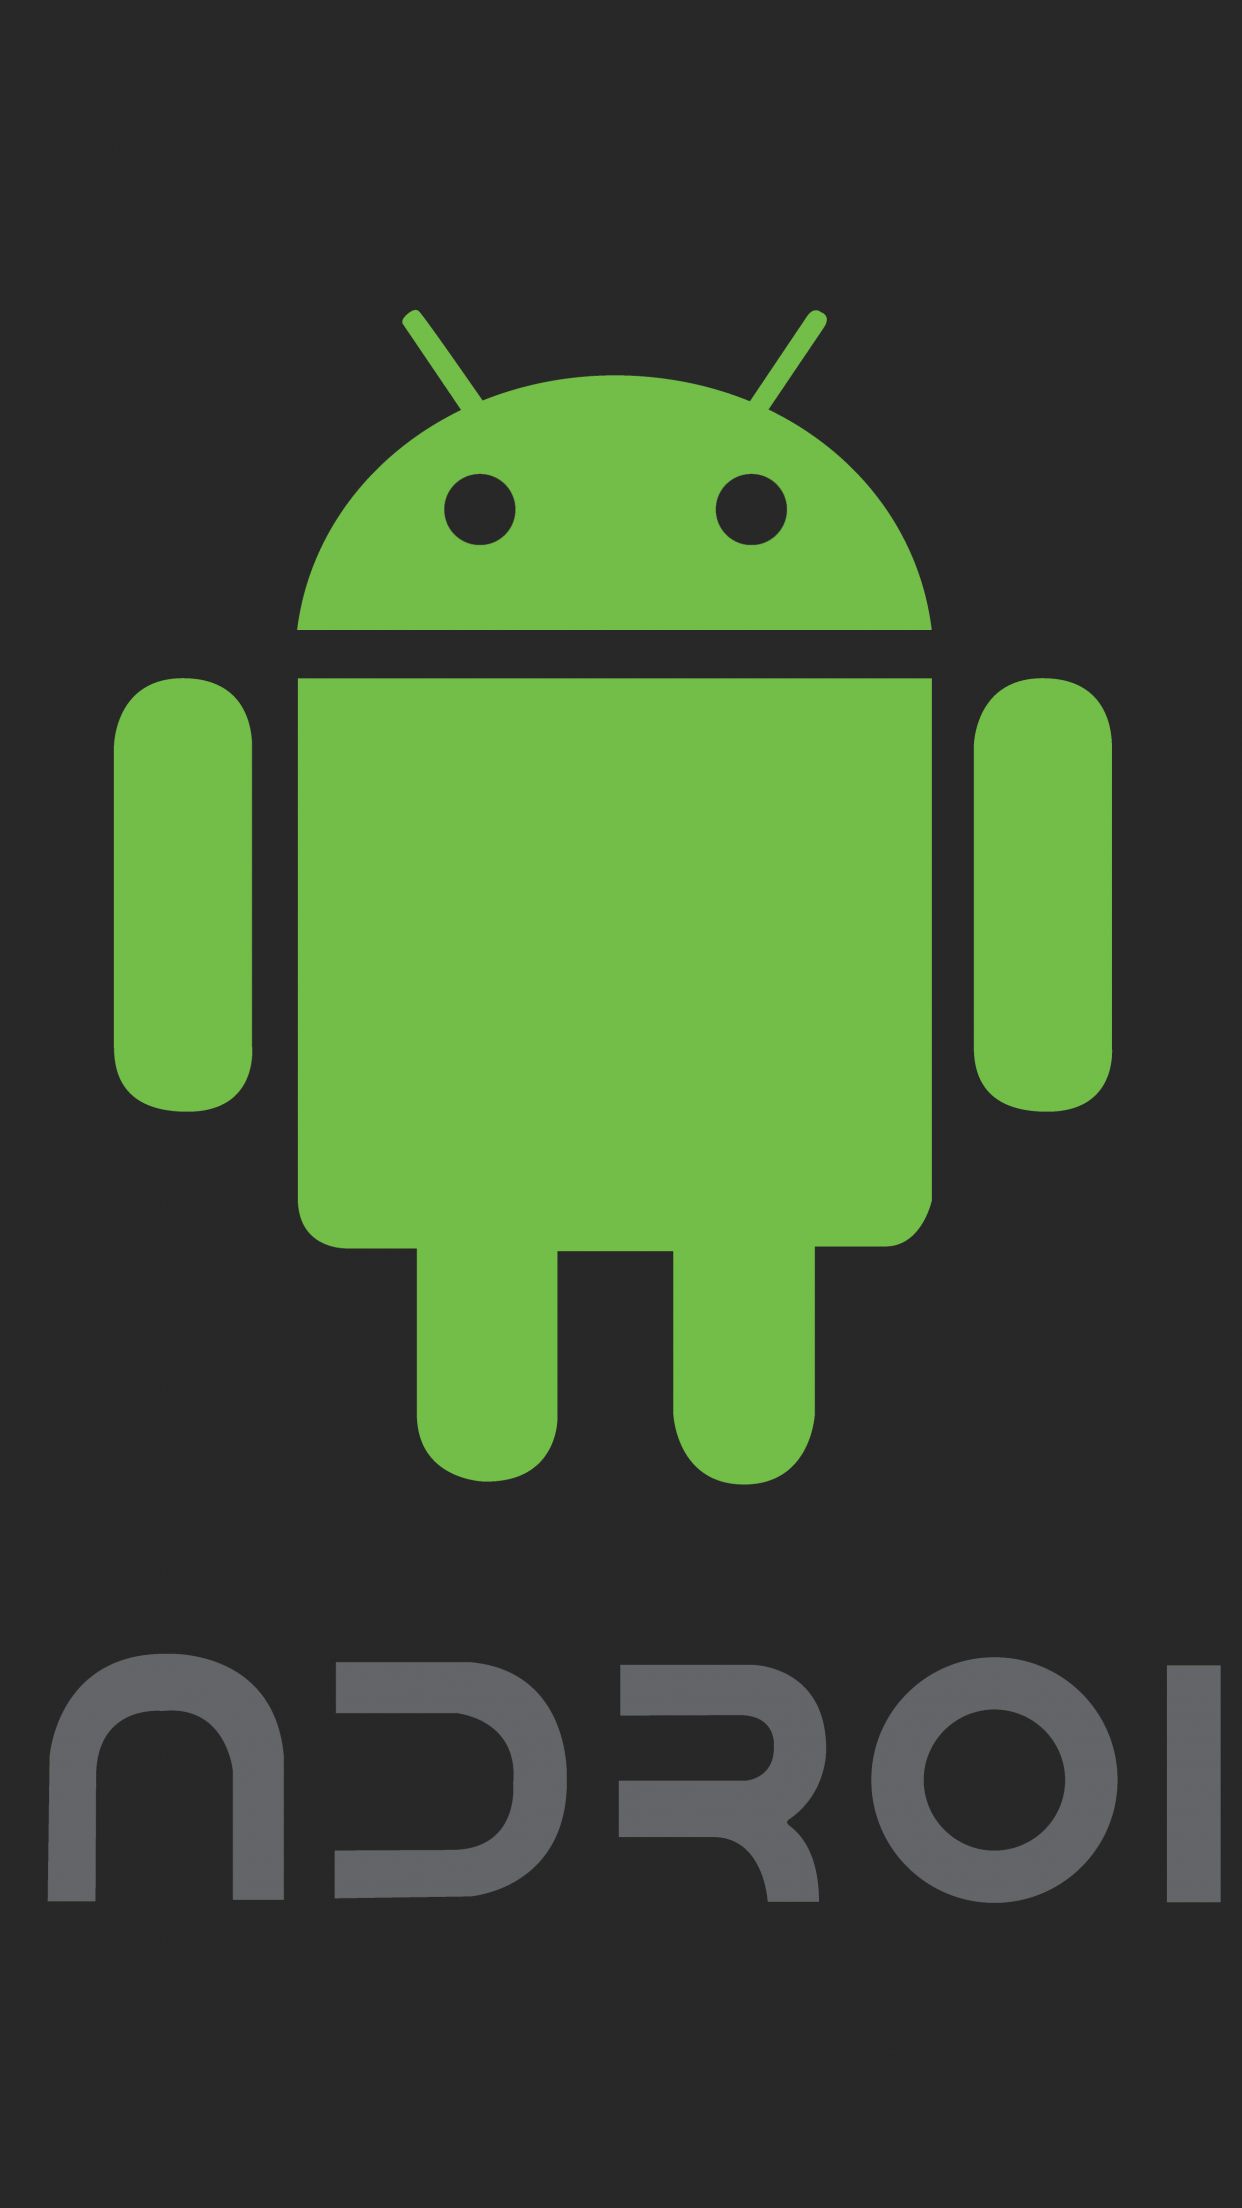 Android Wallpaper 4K, Dark aesthetic, 8K, robot, 5K